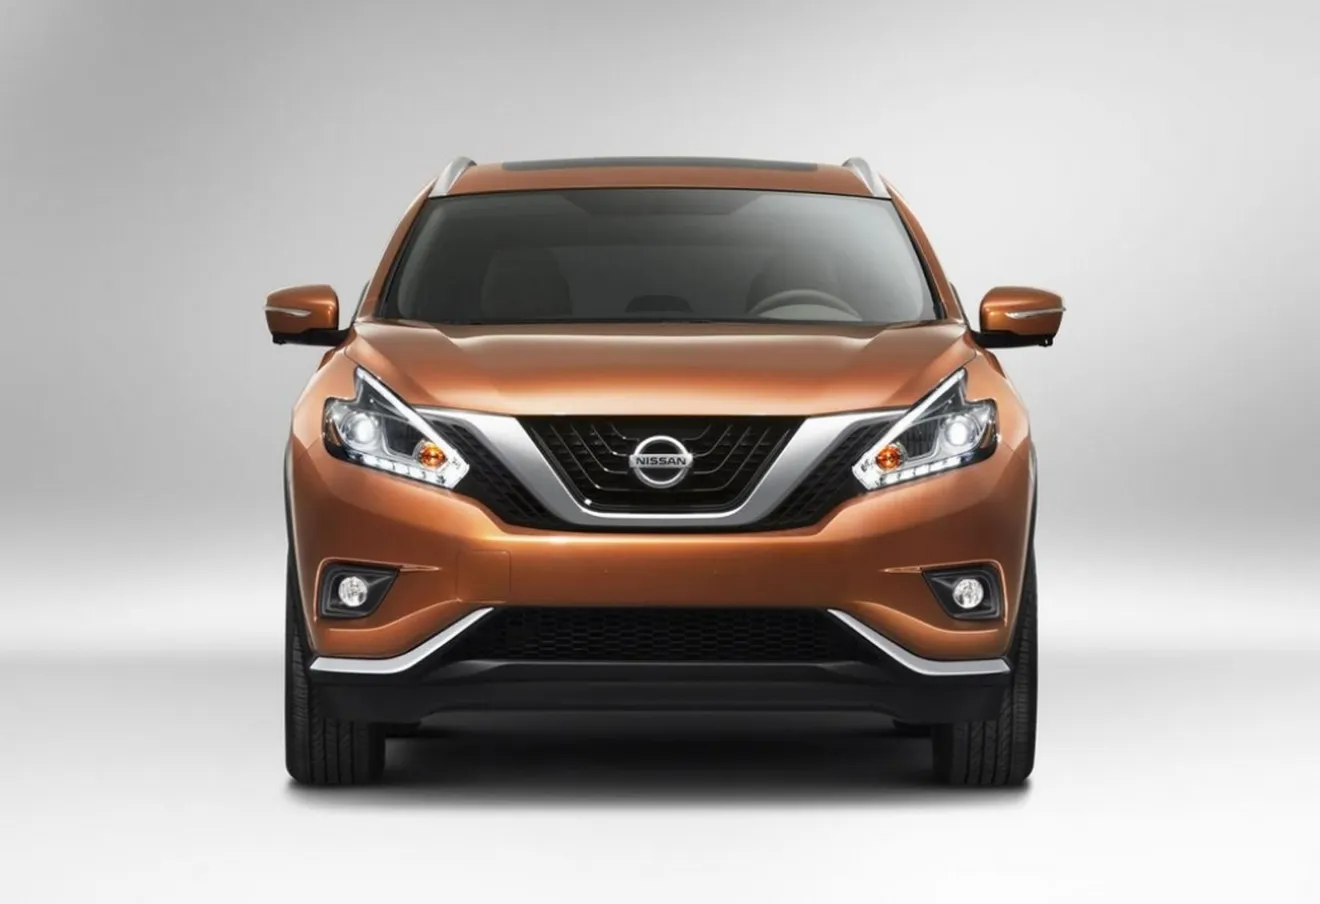 Nissan Murano 2015, la renovación del SUV más lujoso de Nissan